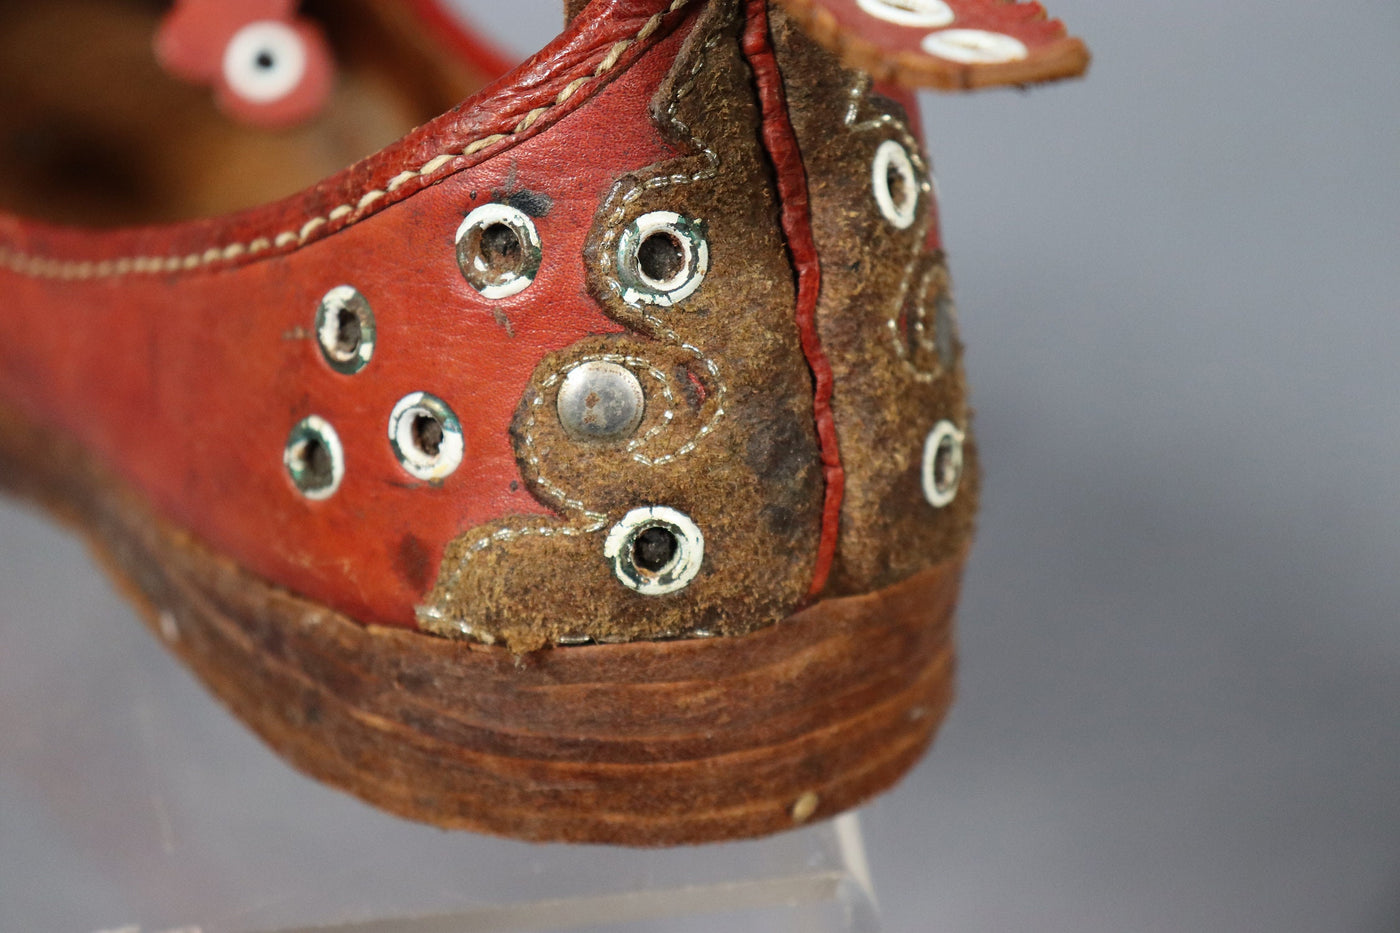 antik und sehr seltener nomaden Frauen Hochzeit Schuhe schnabelschuhe aus Afghanistan Pakistan Indien Braun  Orientsbazar   